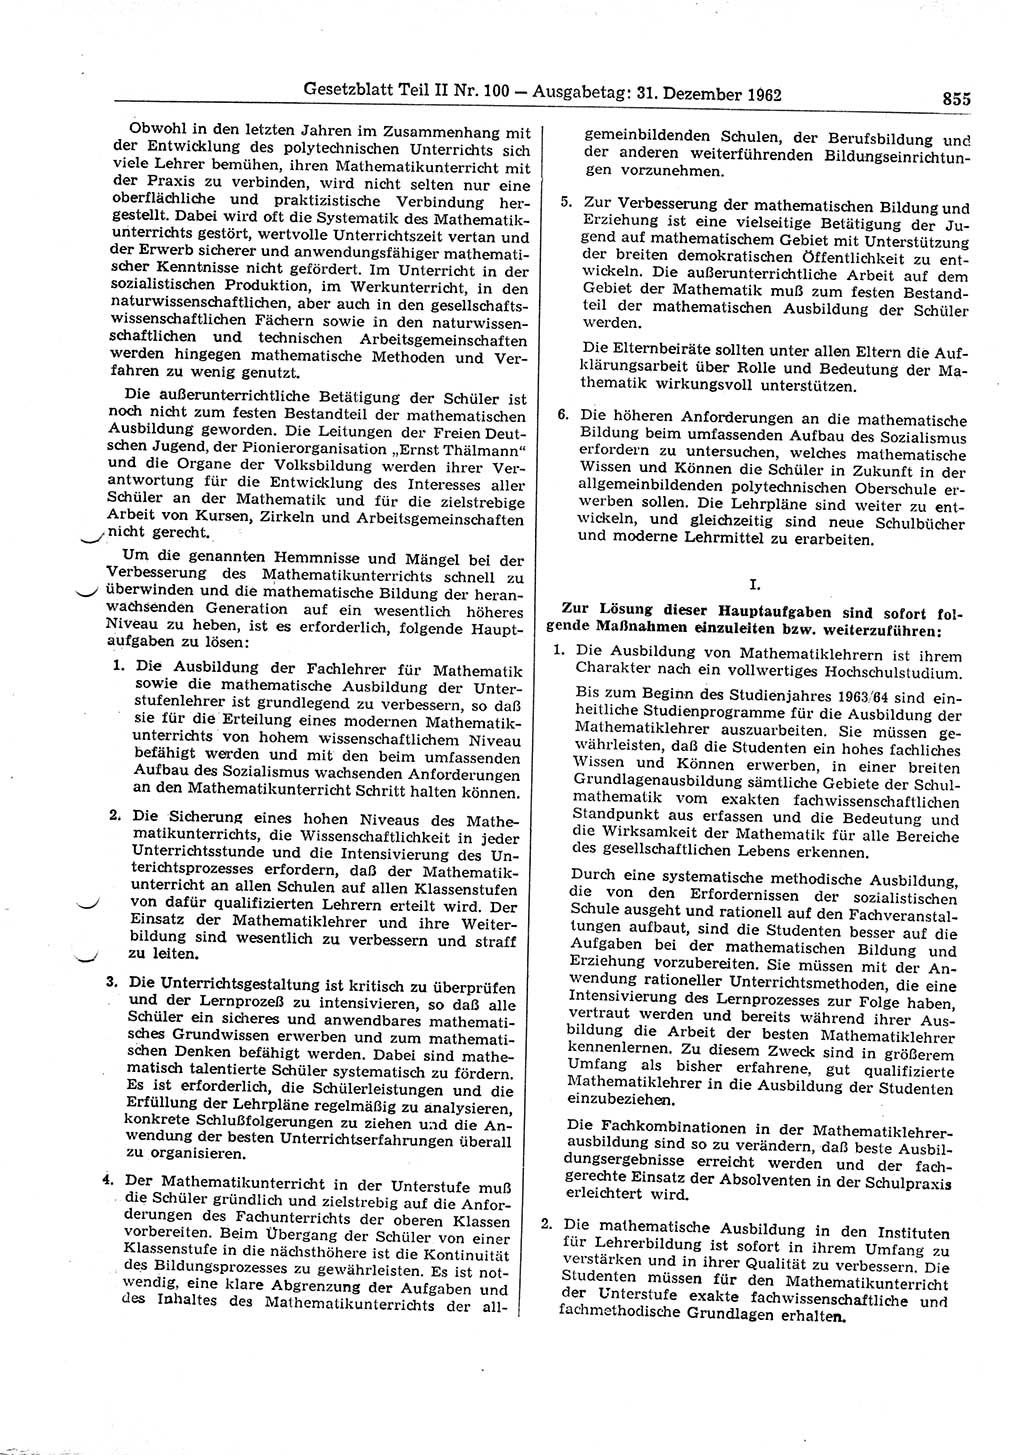 Gesetzblatt (GBl.) der Deutschen Demokratischen Republik (DDR) Teil ⅠⅠ 1962, Seite 855 (GBl. DDR ⅠⅠ 1962, S. 855)